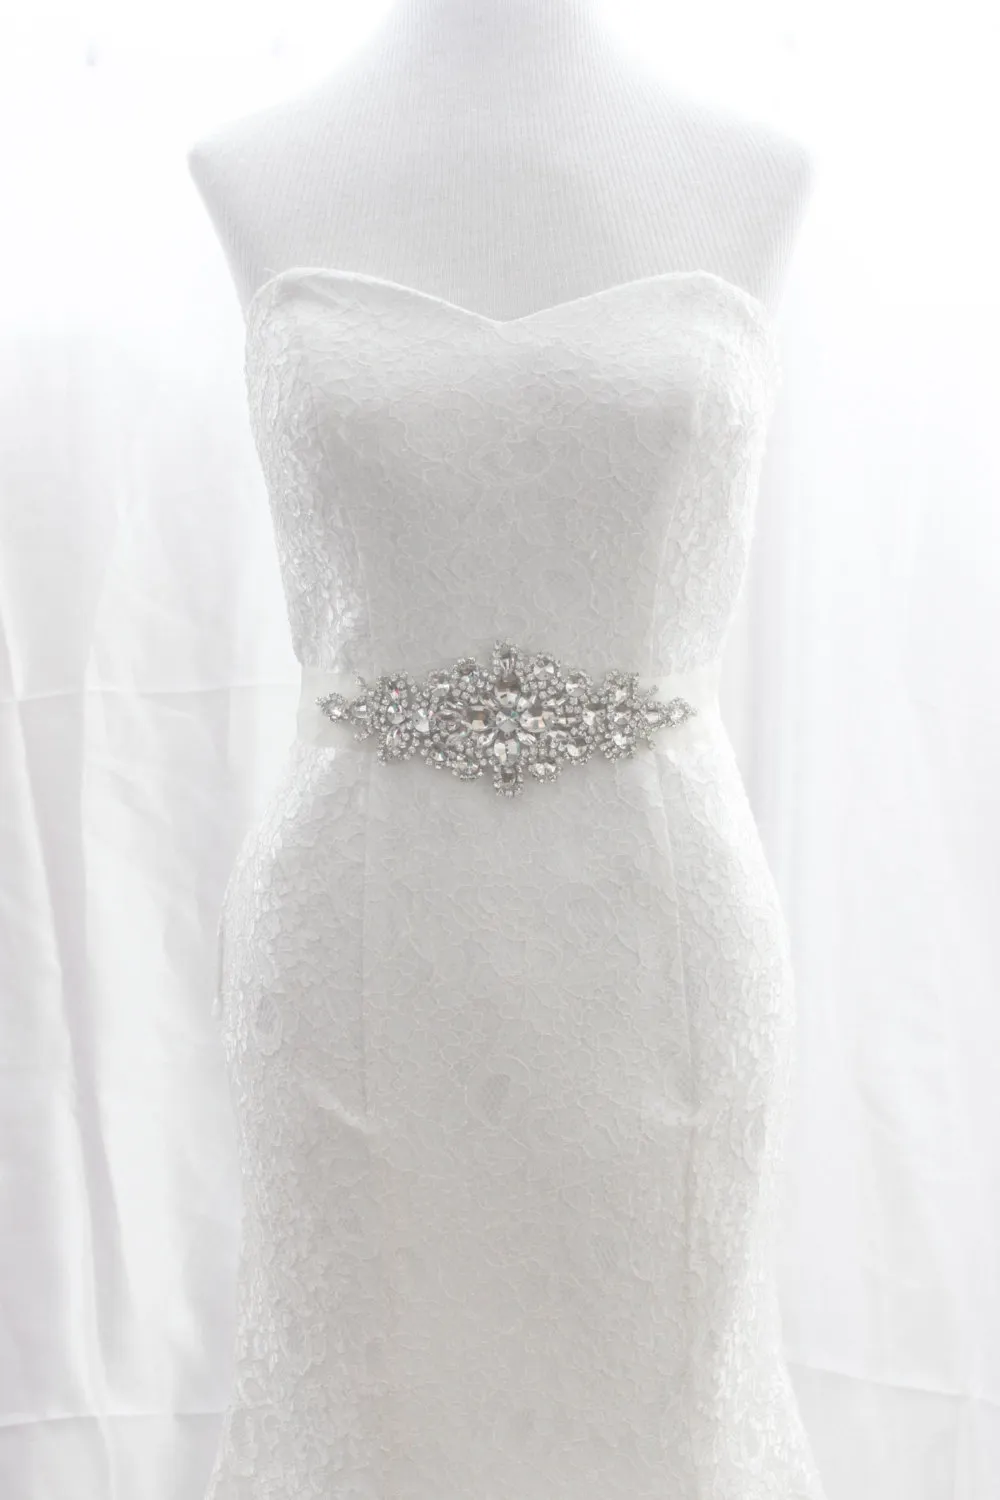 Свадебный пояс со стразами, кружевное платье, платье невесты, пояс с бриллиантами, аксессуары 234v